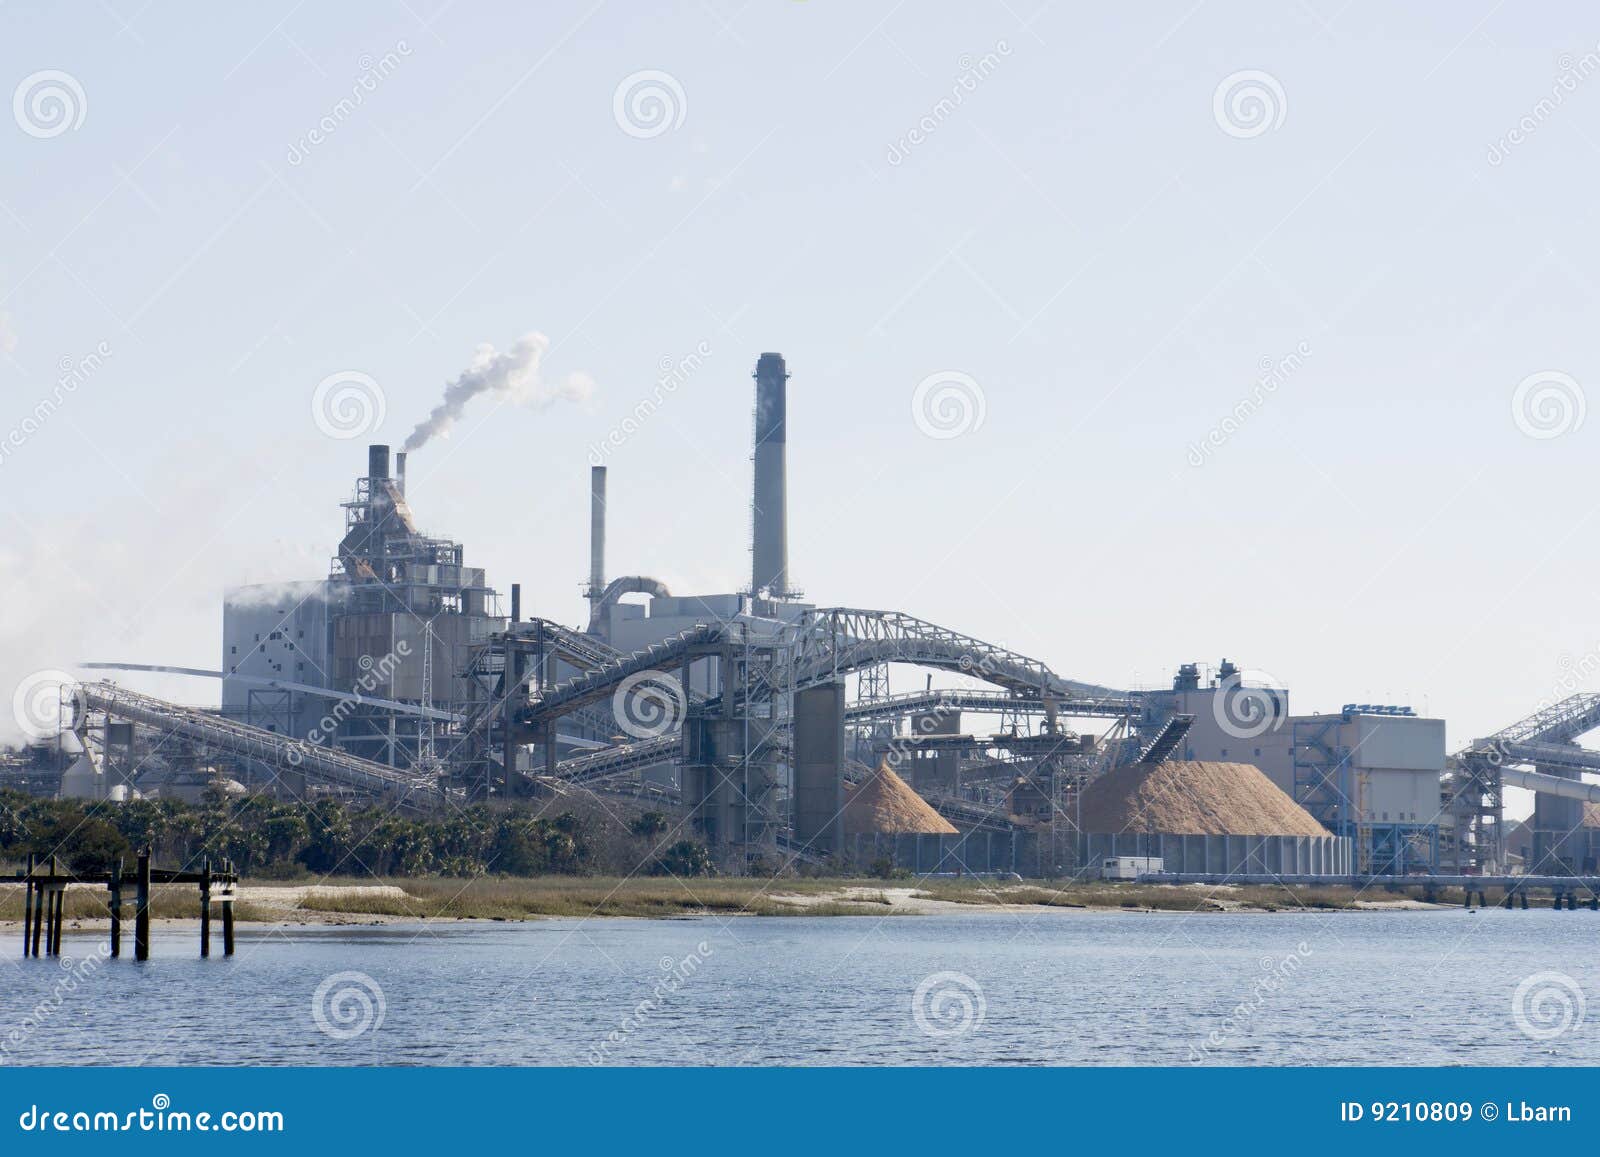 riverfront paper mill machinery